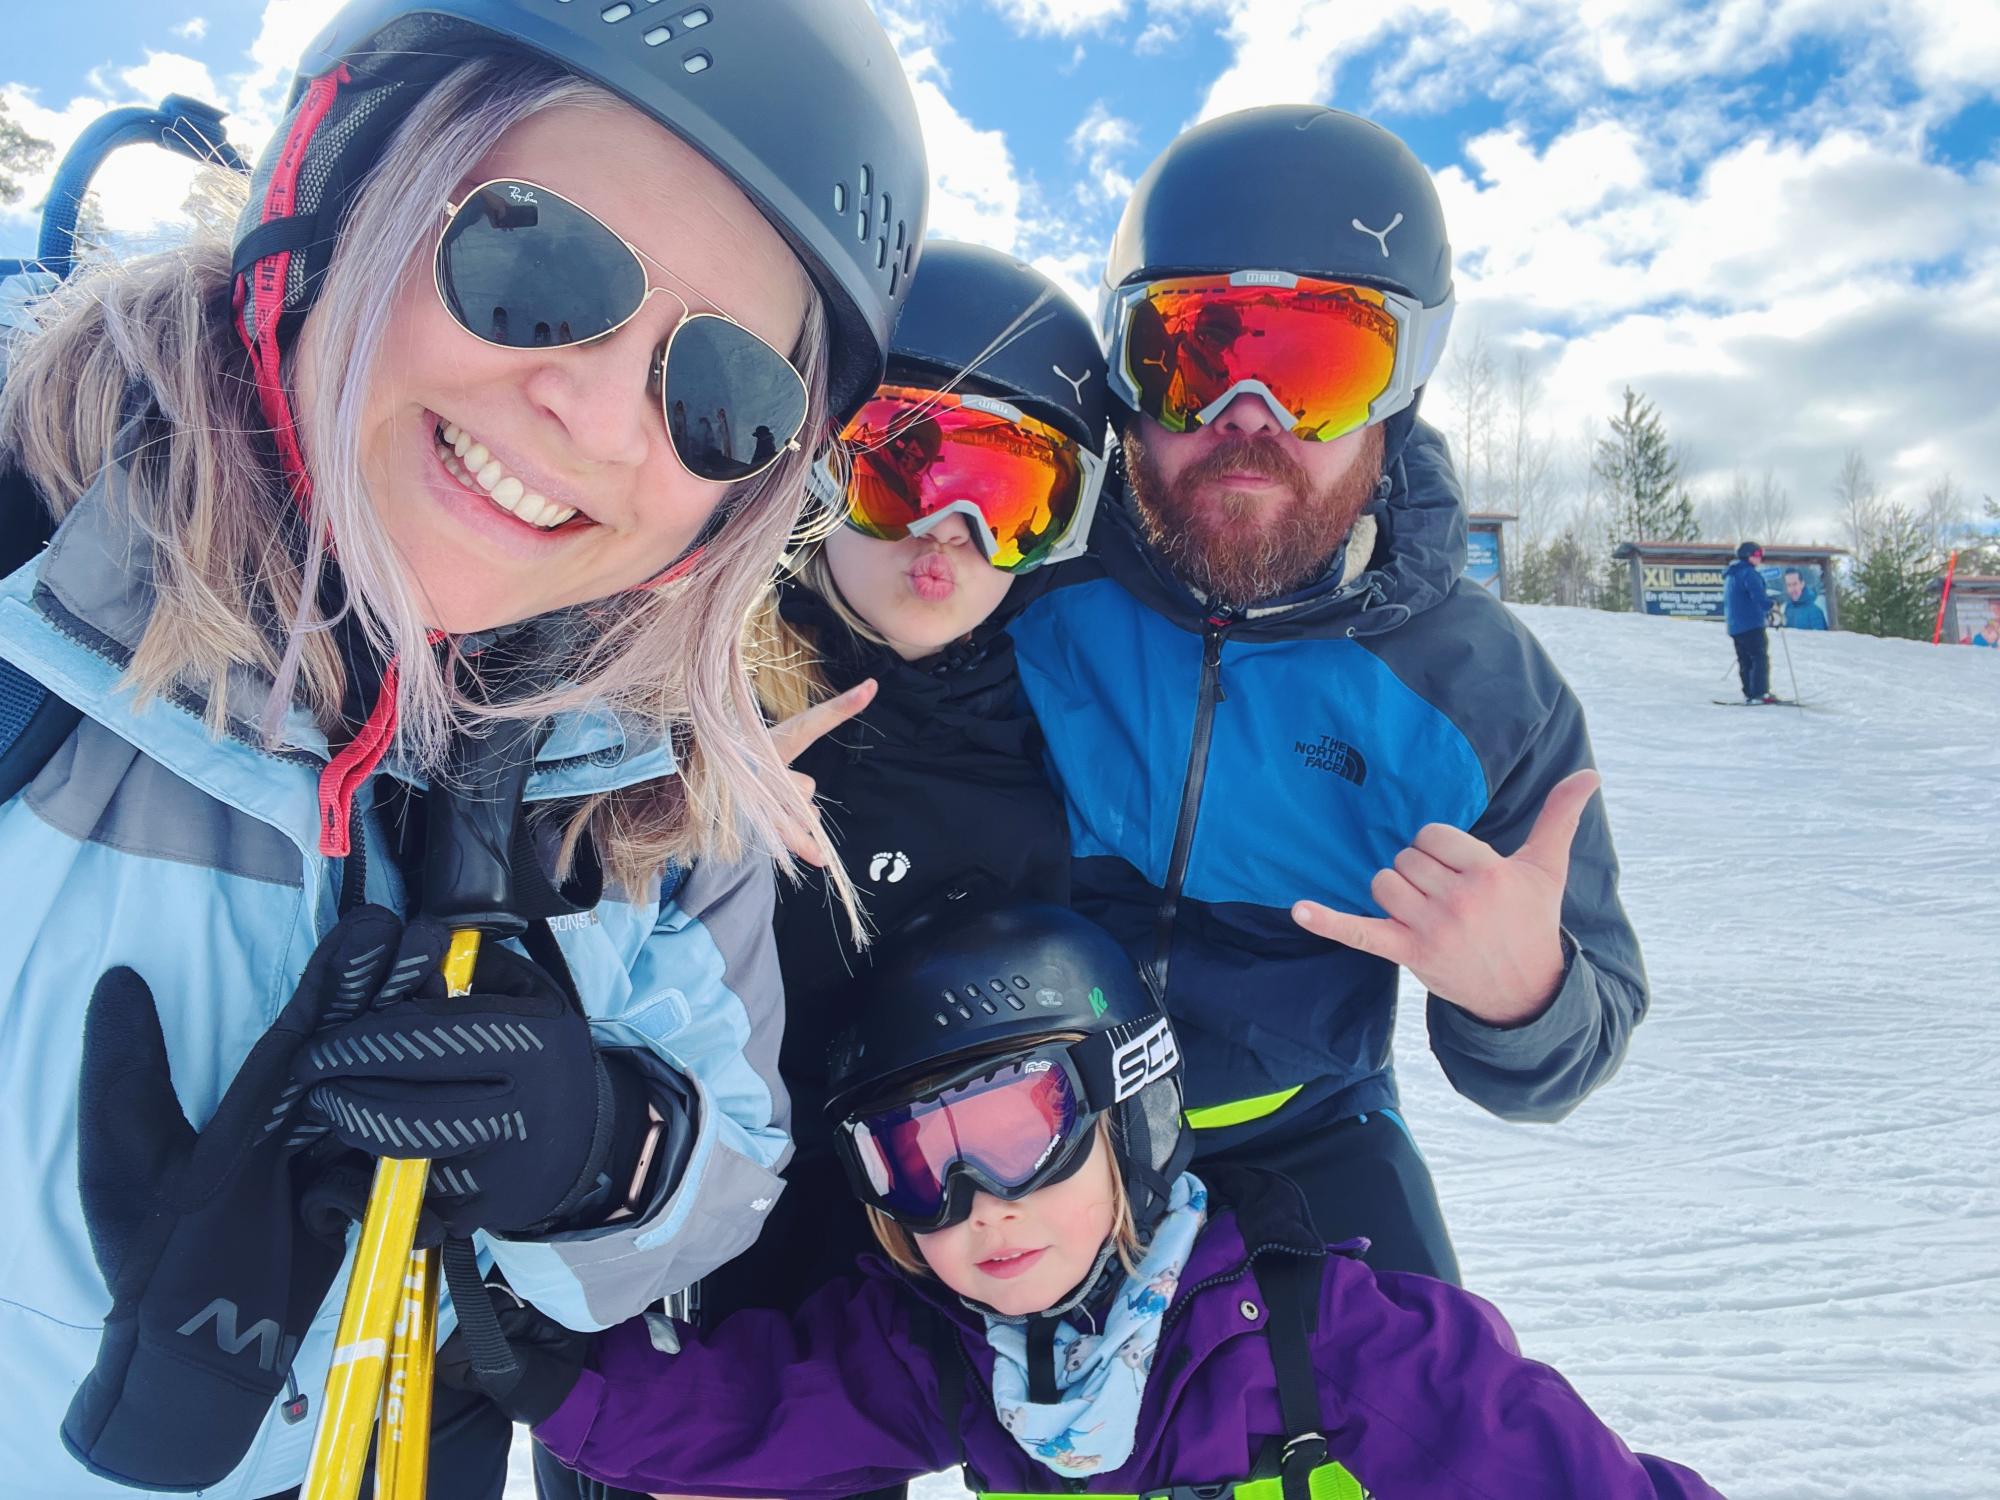 Järvsö på skidor tillsammans med familjen